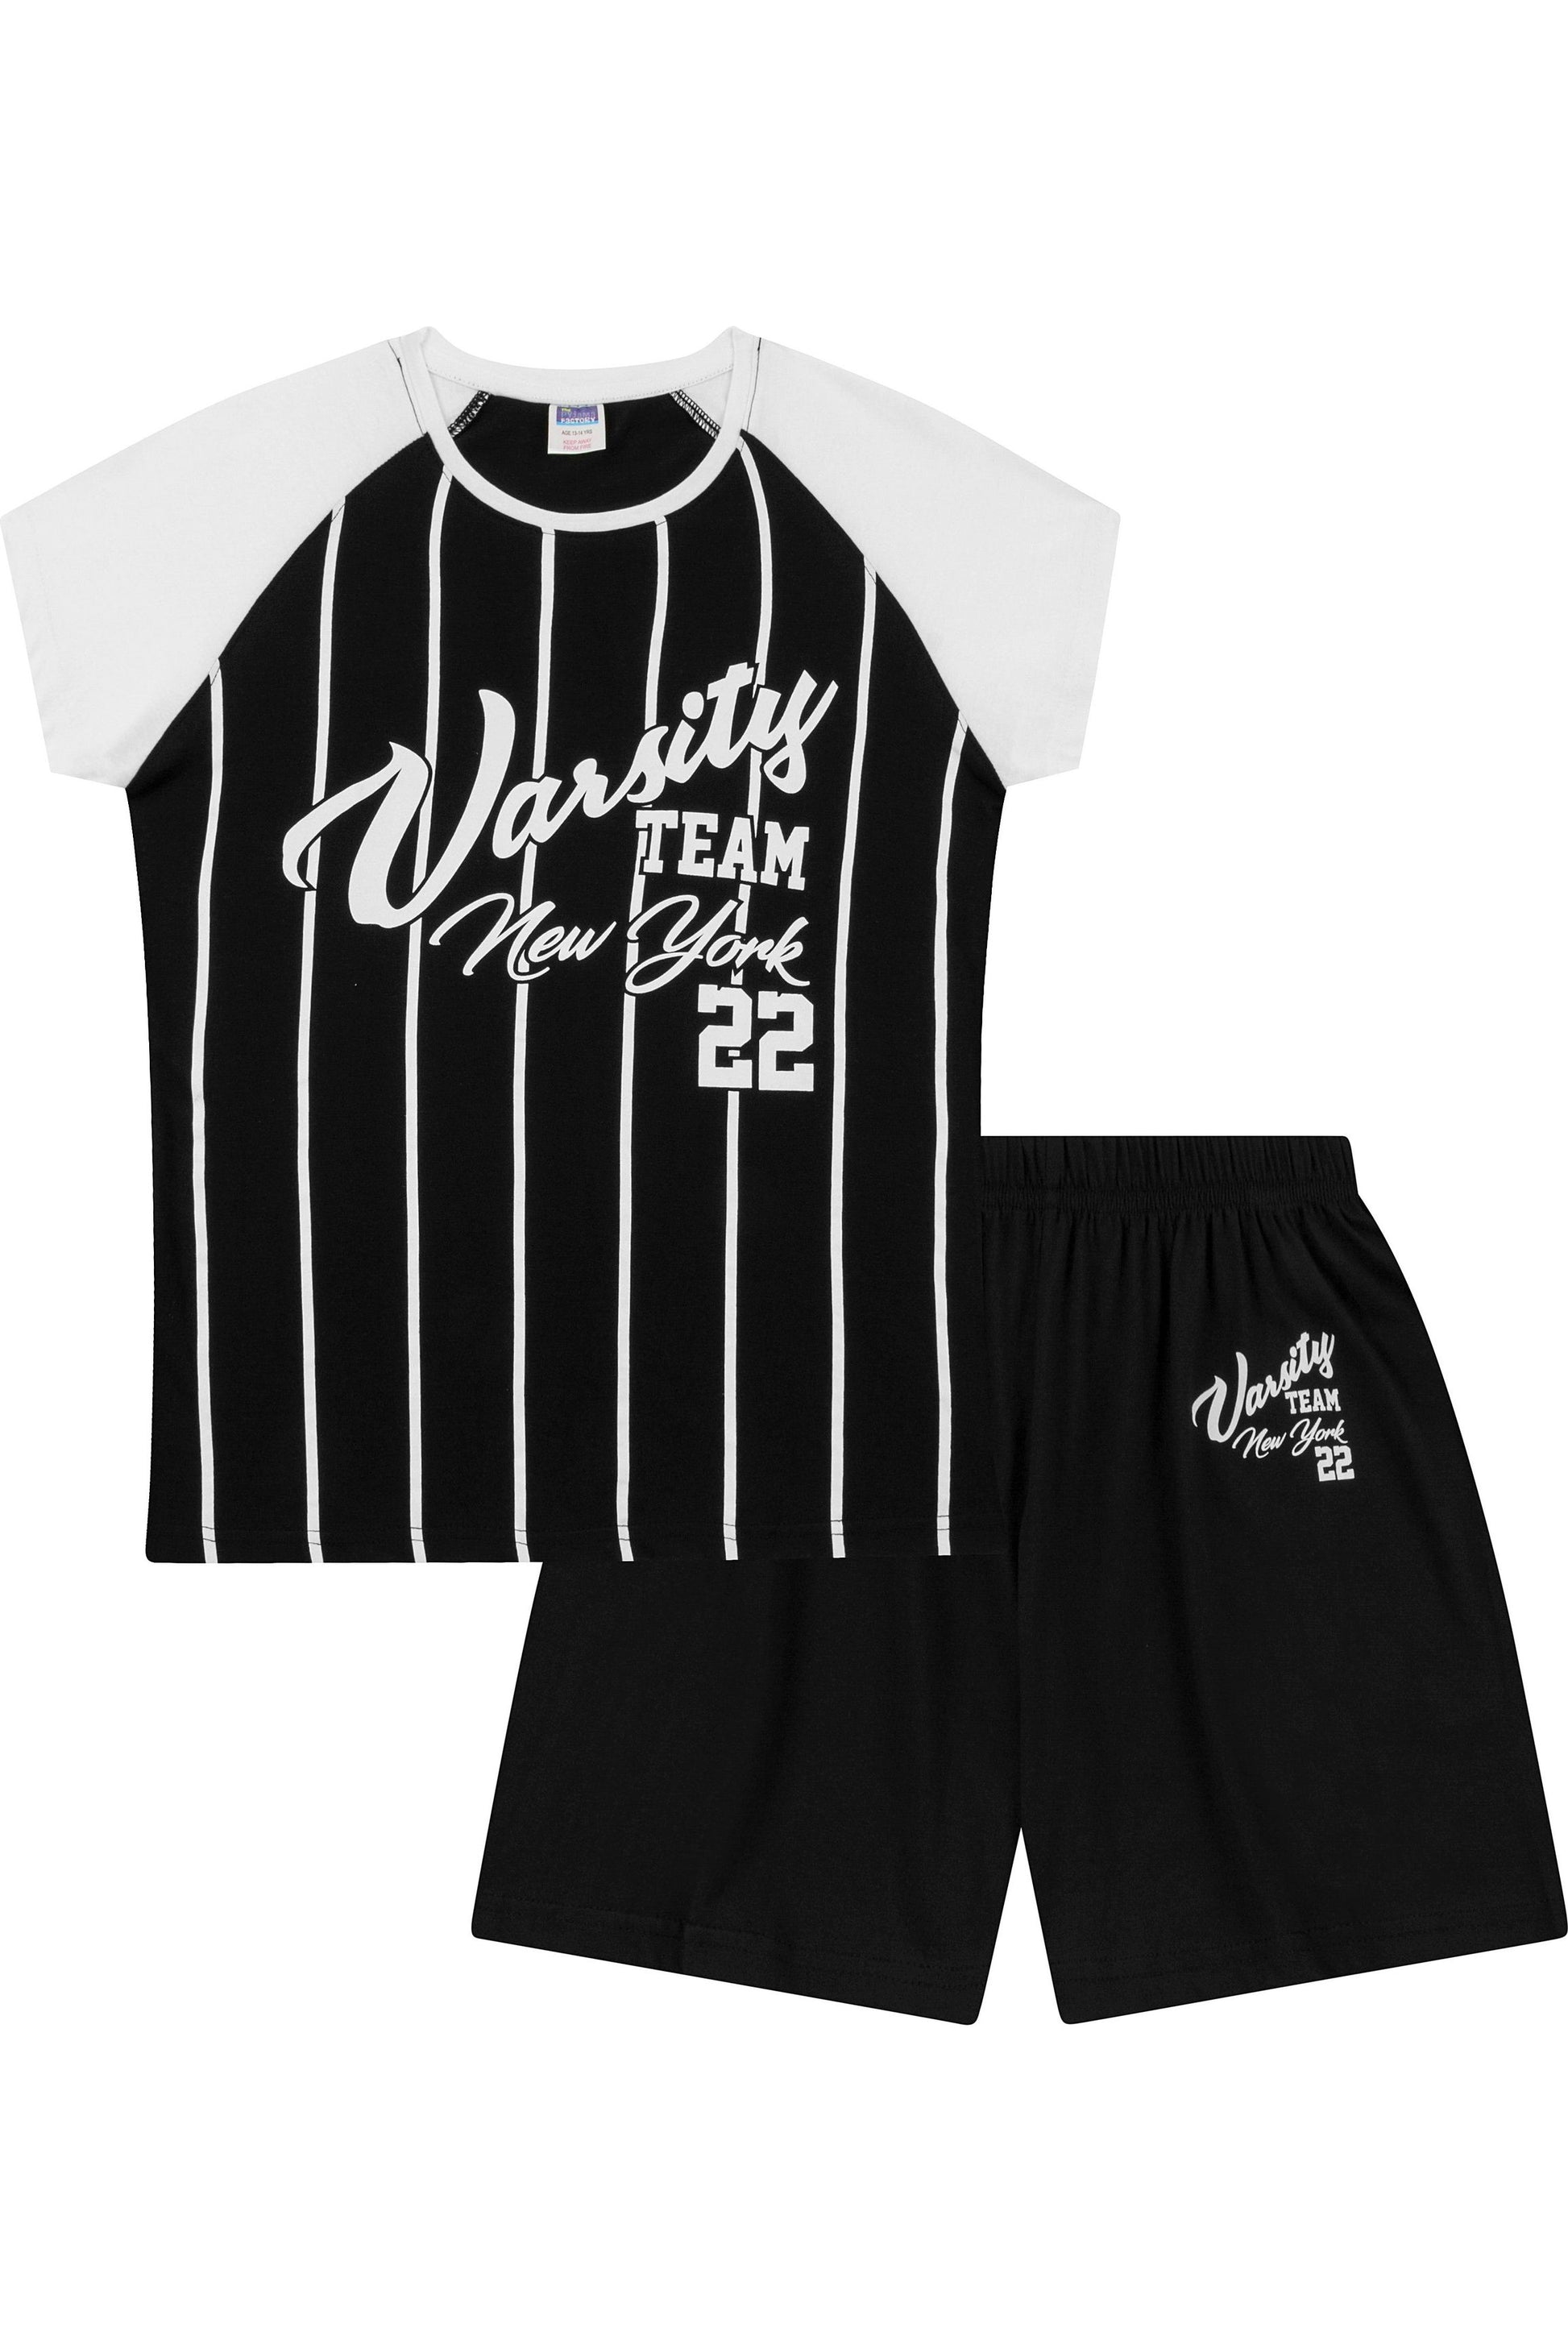 Girls Varsity Team Short Pyjamas - Pyjamas.com